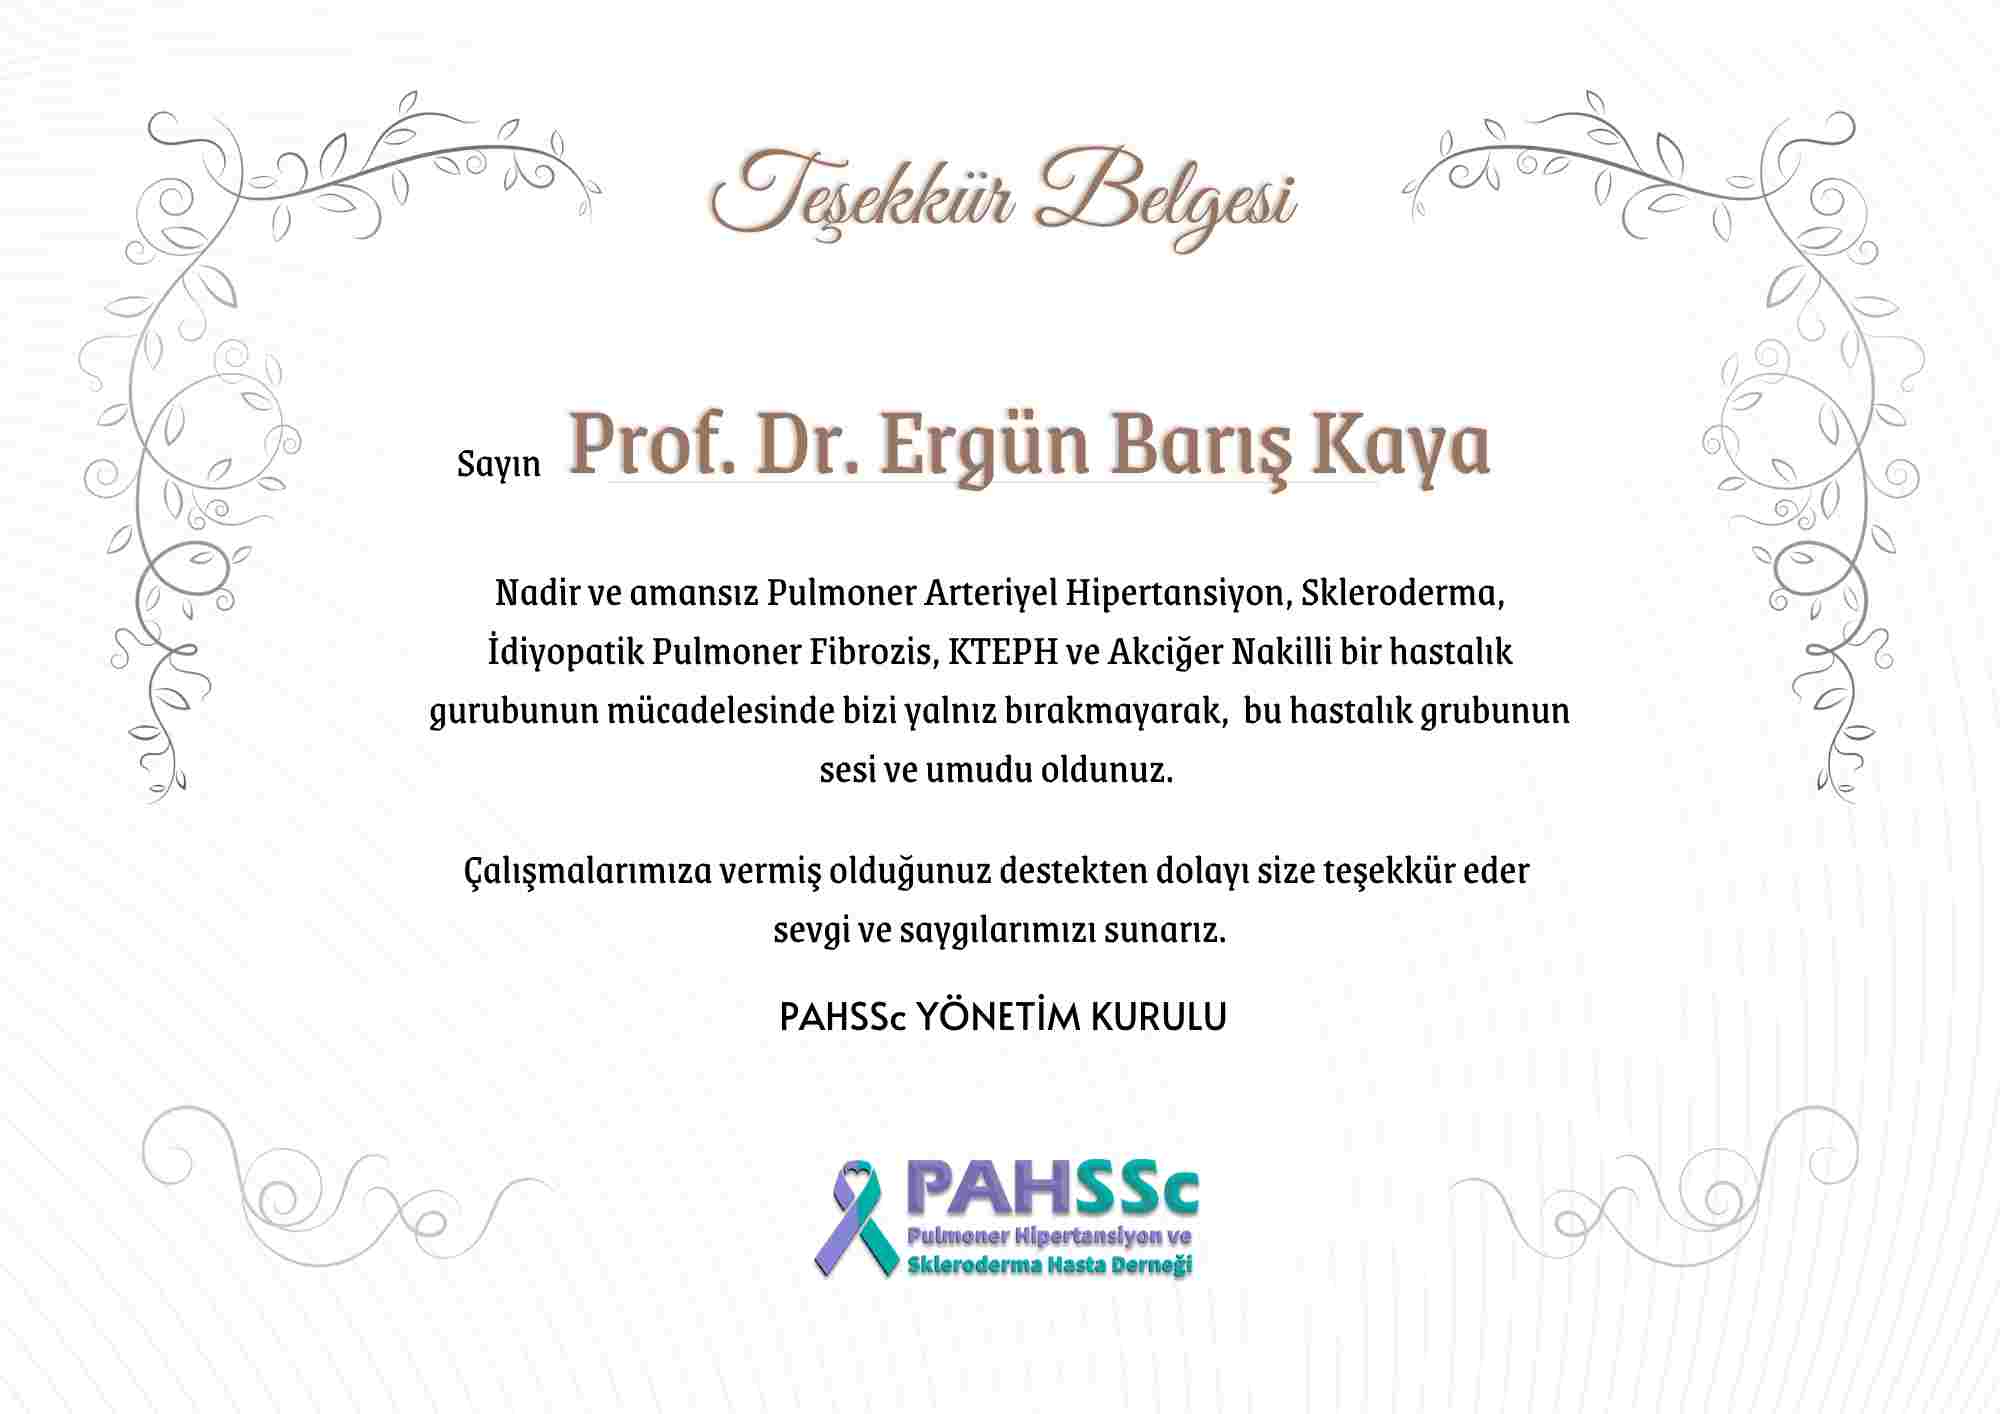 Prof. Dr. Ergün Barış Kaya